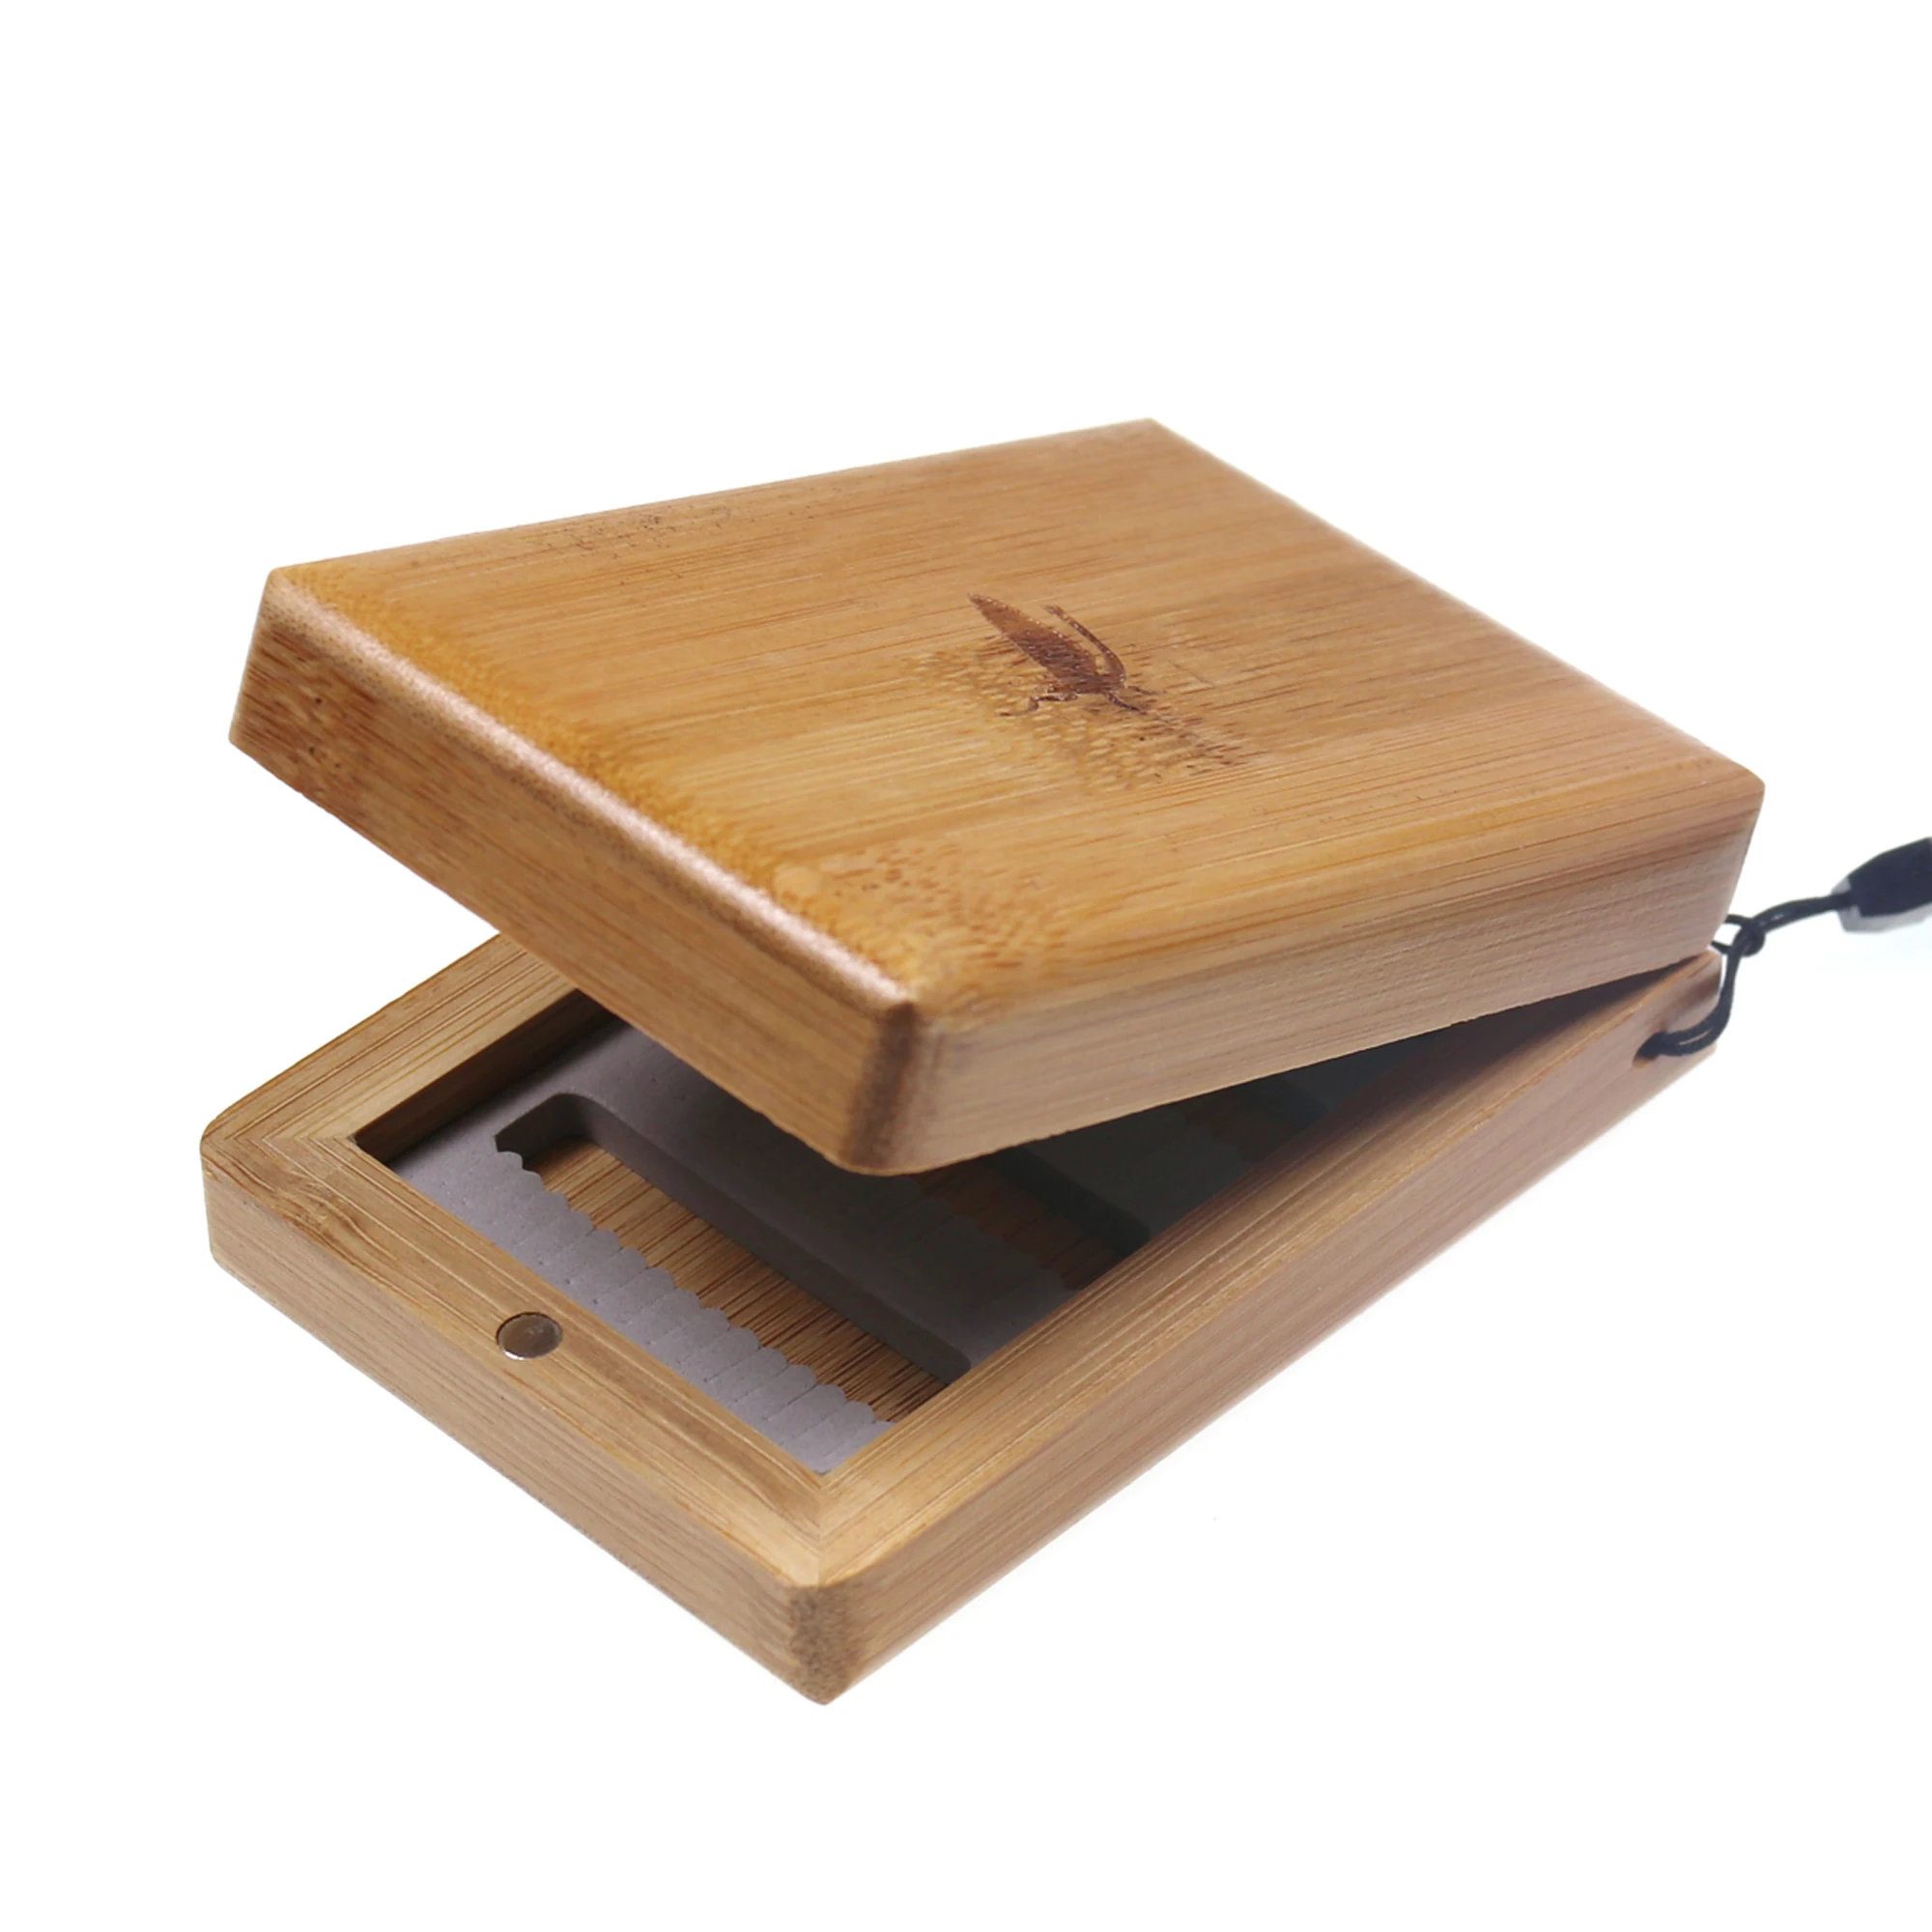 Bimoo, 1 шт., маленький водонепроницаемый удобный захват, пенопластовая коробка для ловли нахлыстом, деревянная коробка для хранения нахлыстом, бамбуковые контейнеры для хранения, чехол 98*70*30 мм